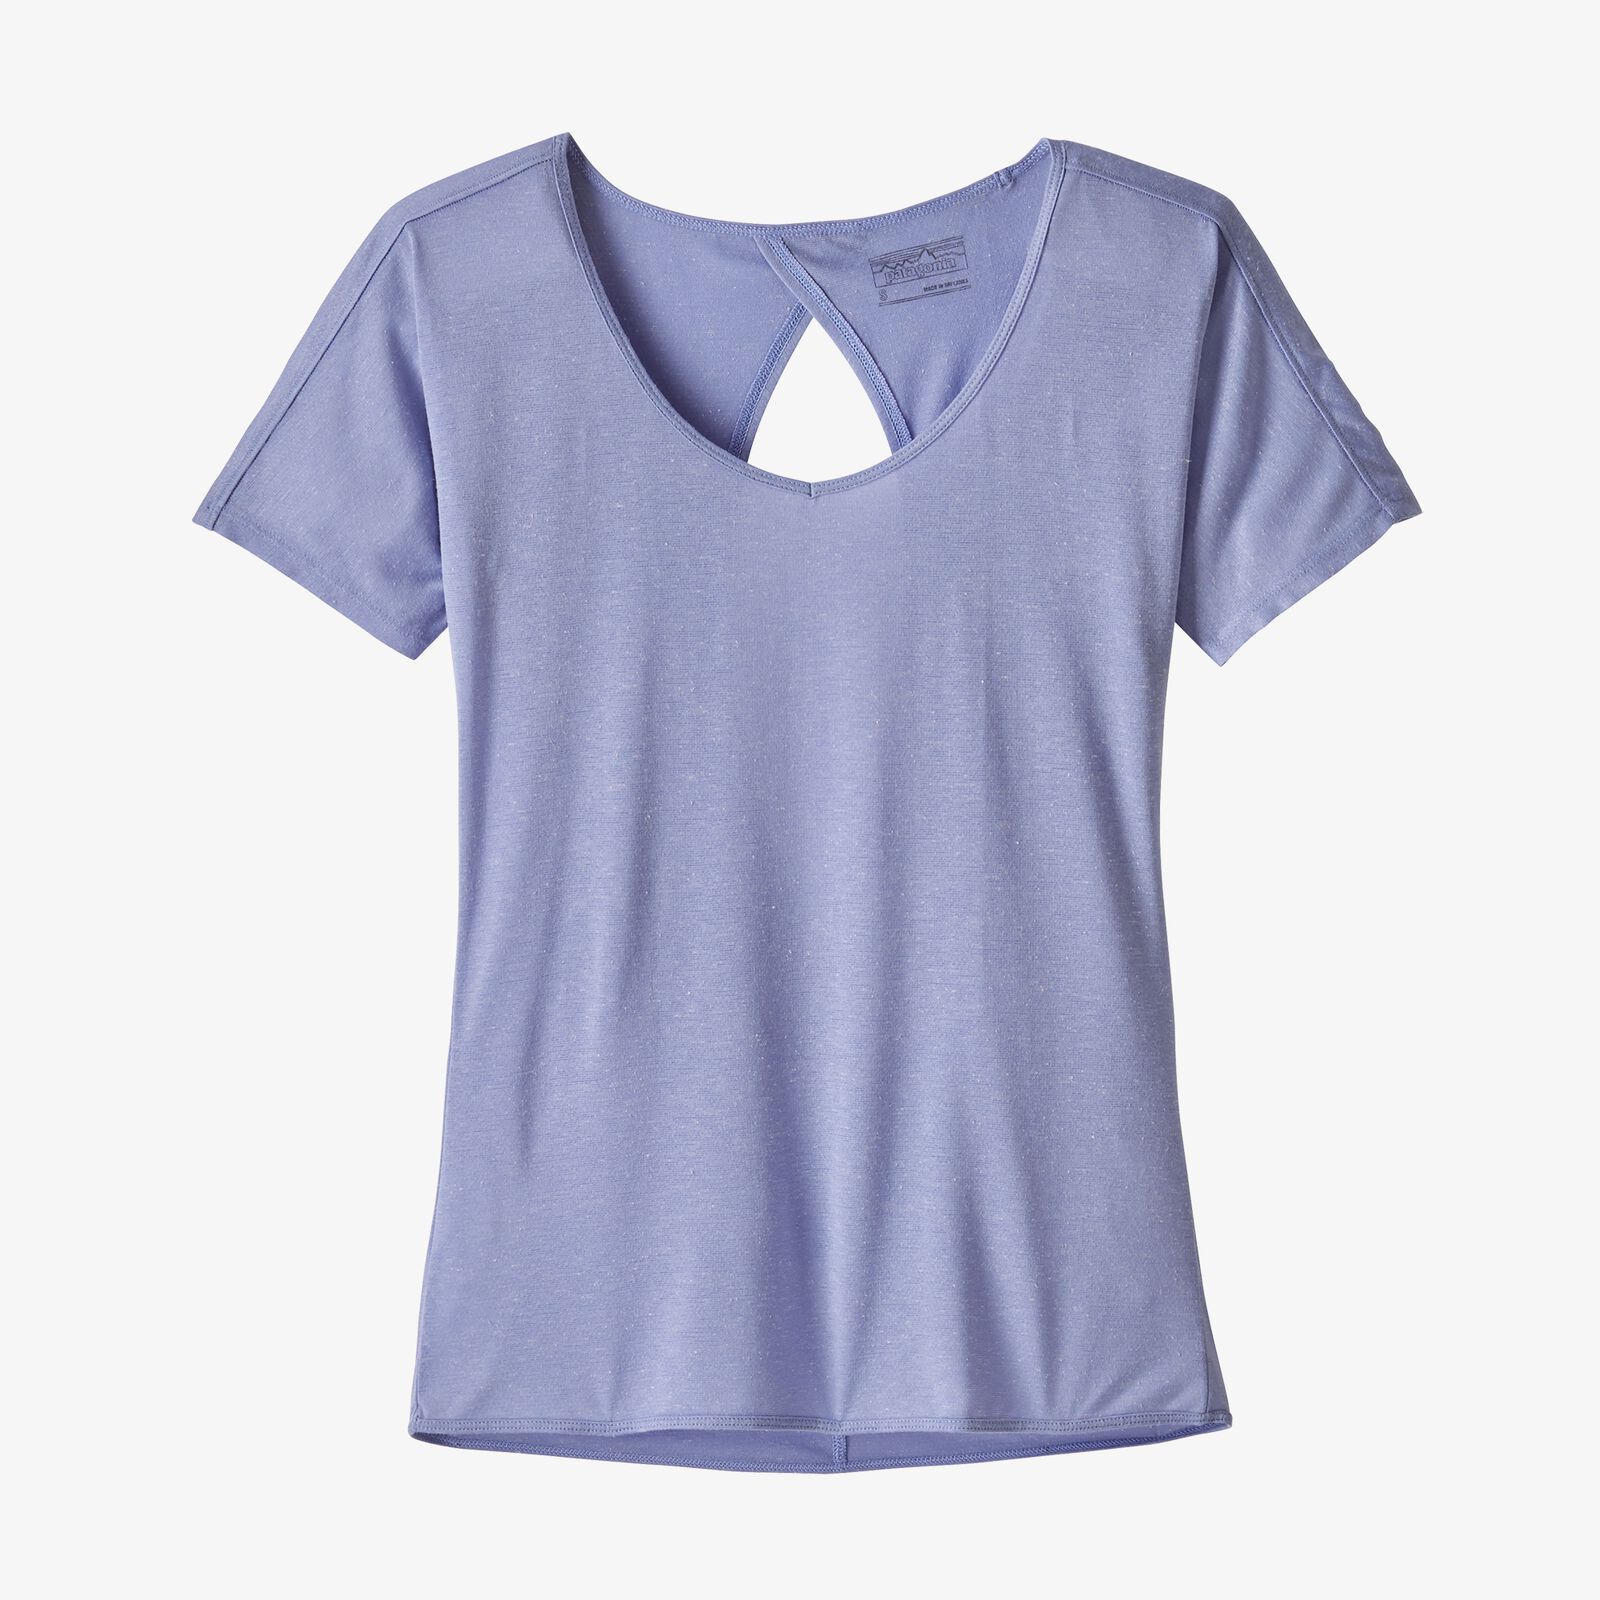 Patagonia Women's Short-Sleeved Mindflow Shirt